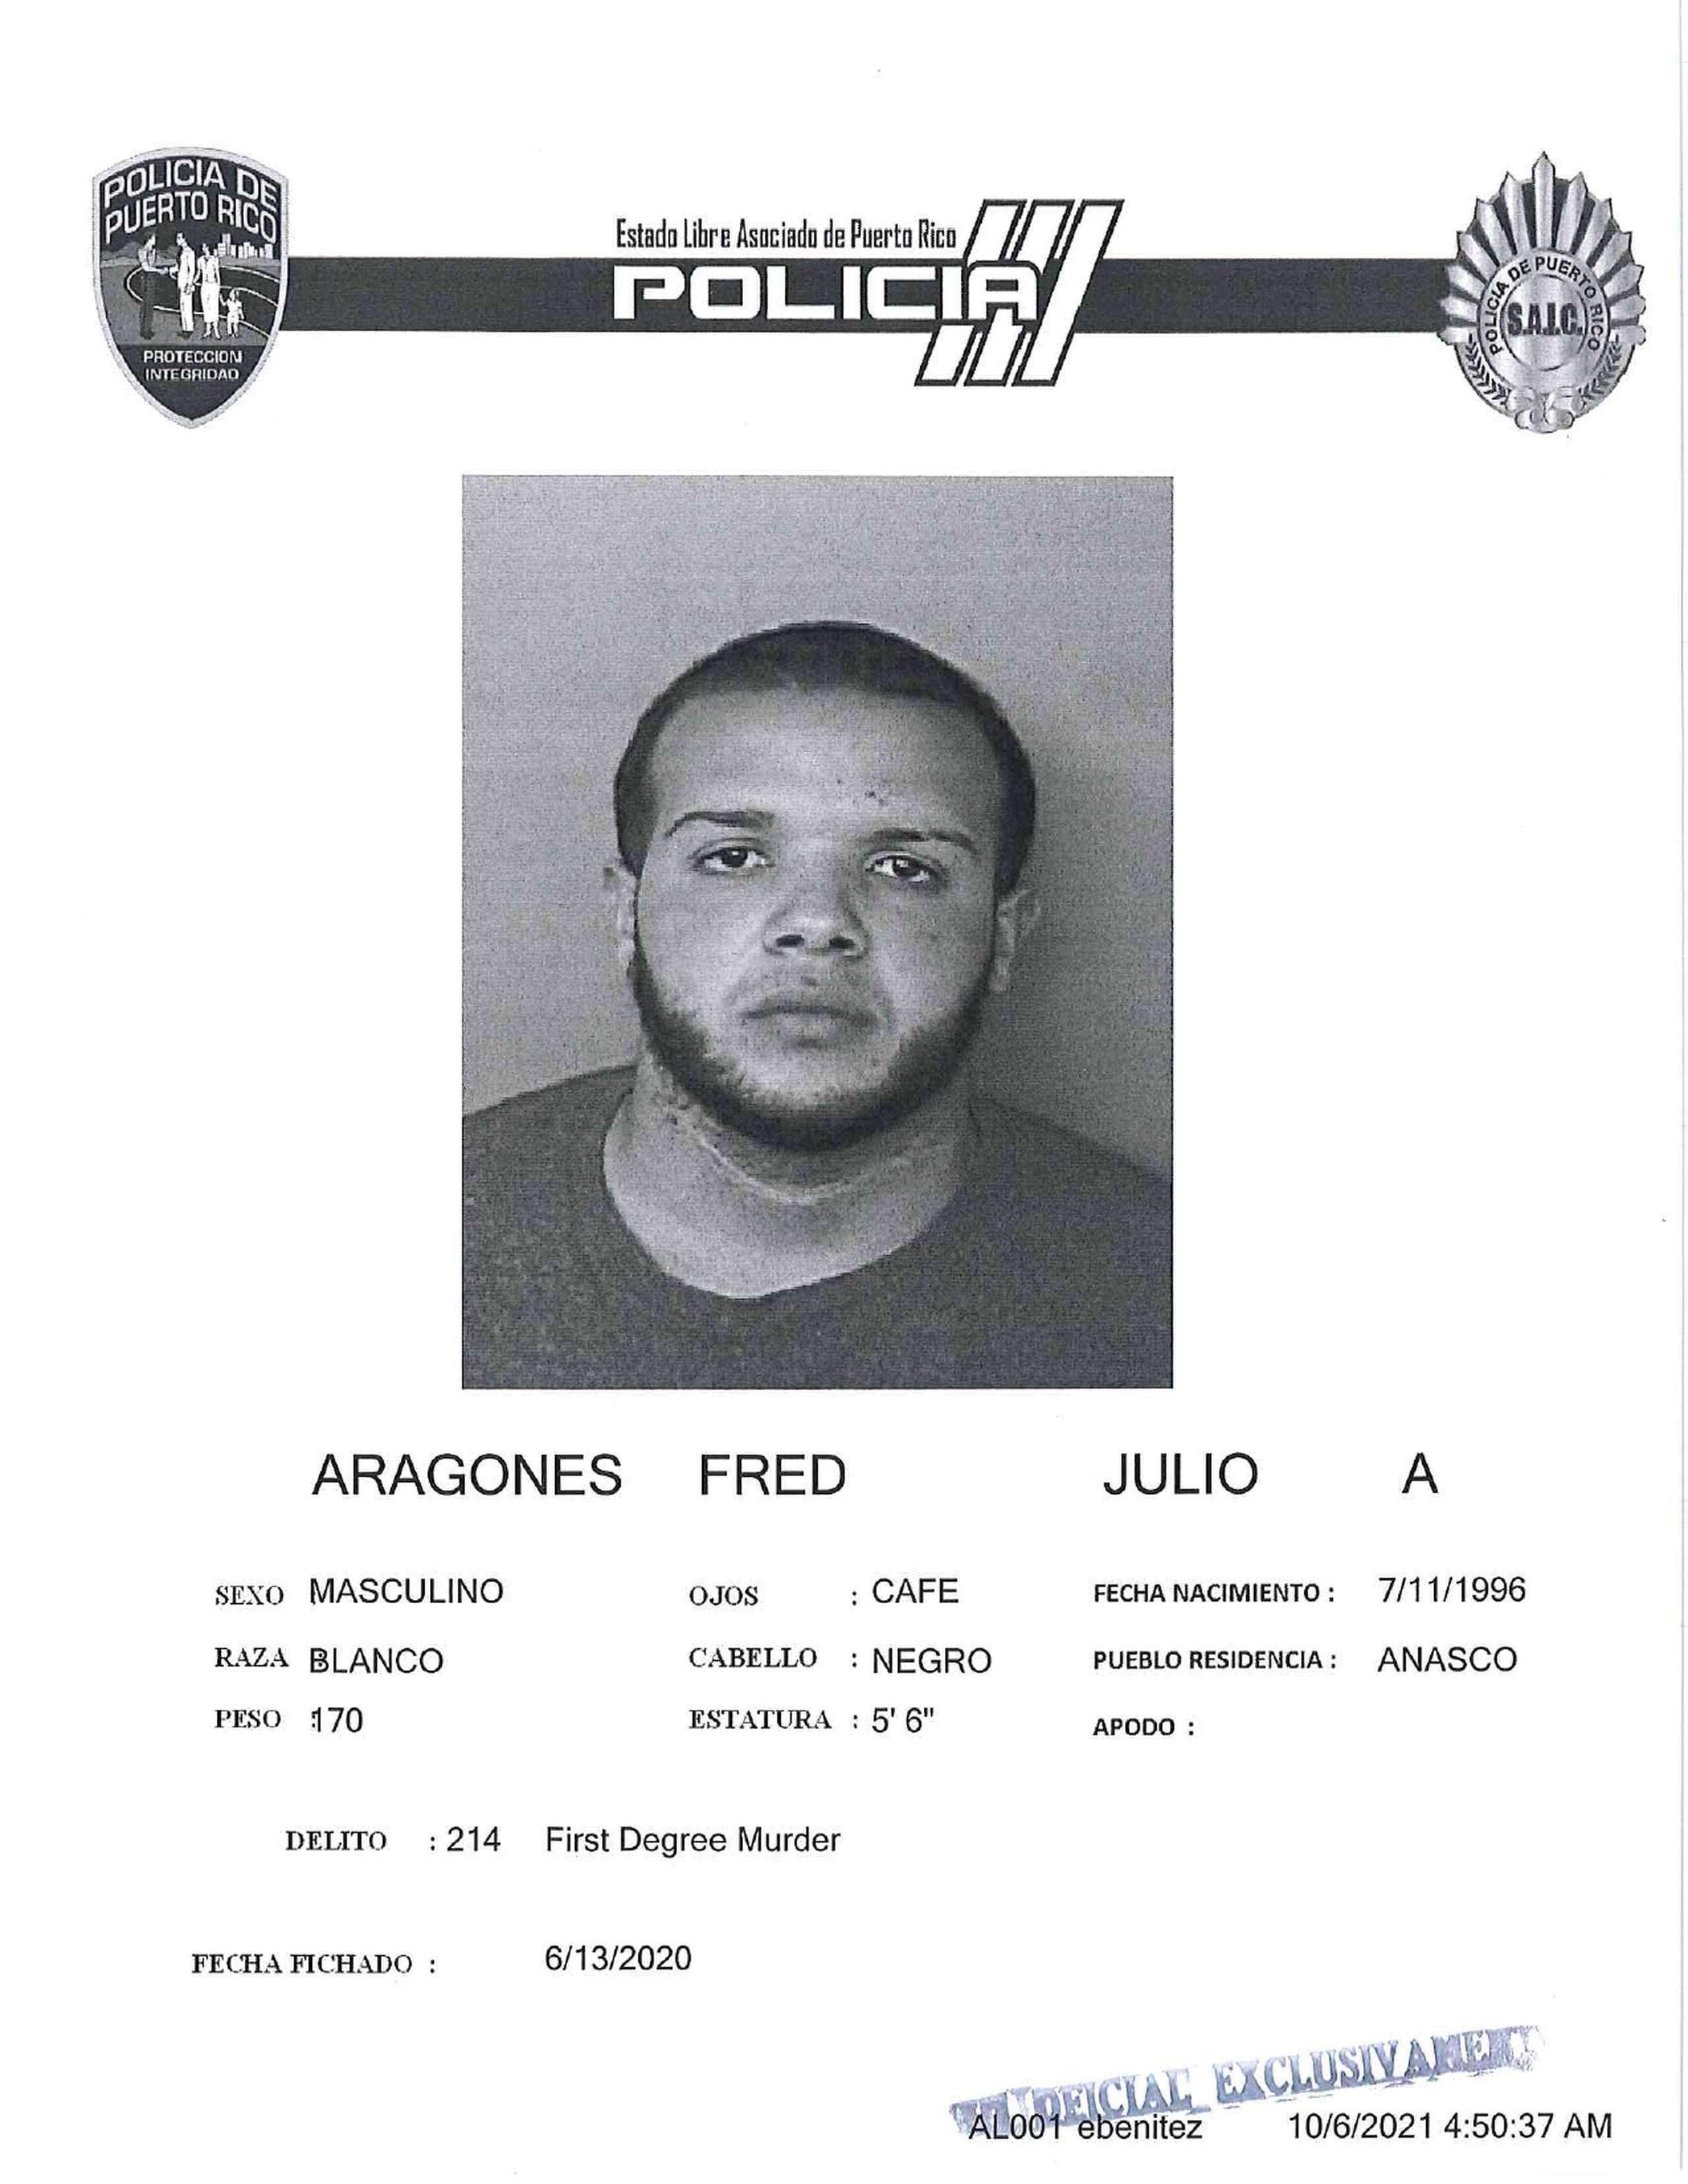 Julio Alejandro Aragonés Fred poseía expediente criminal por asesinato en primer grado.